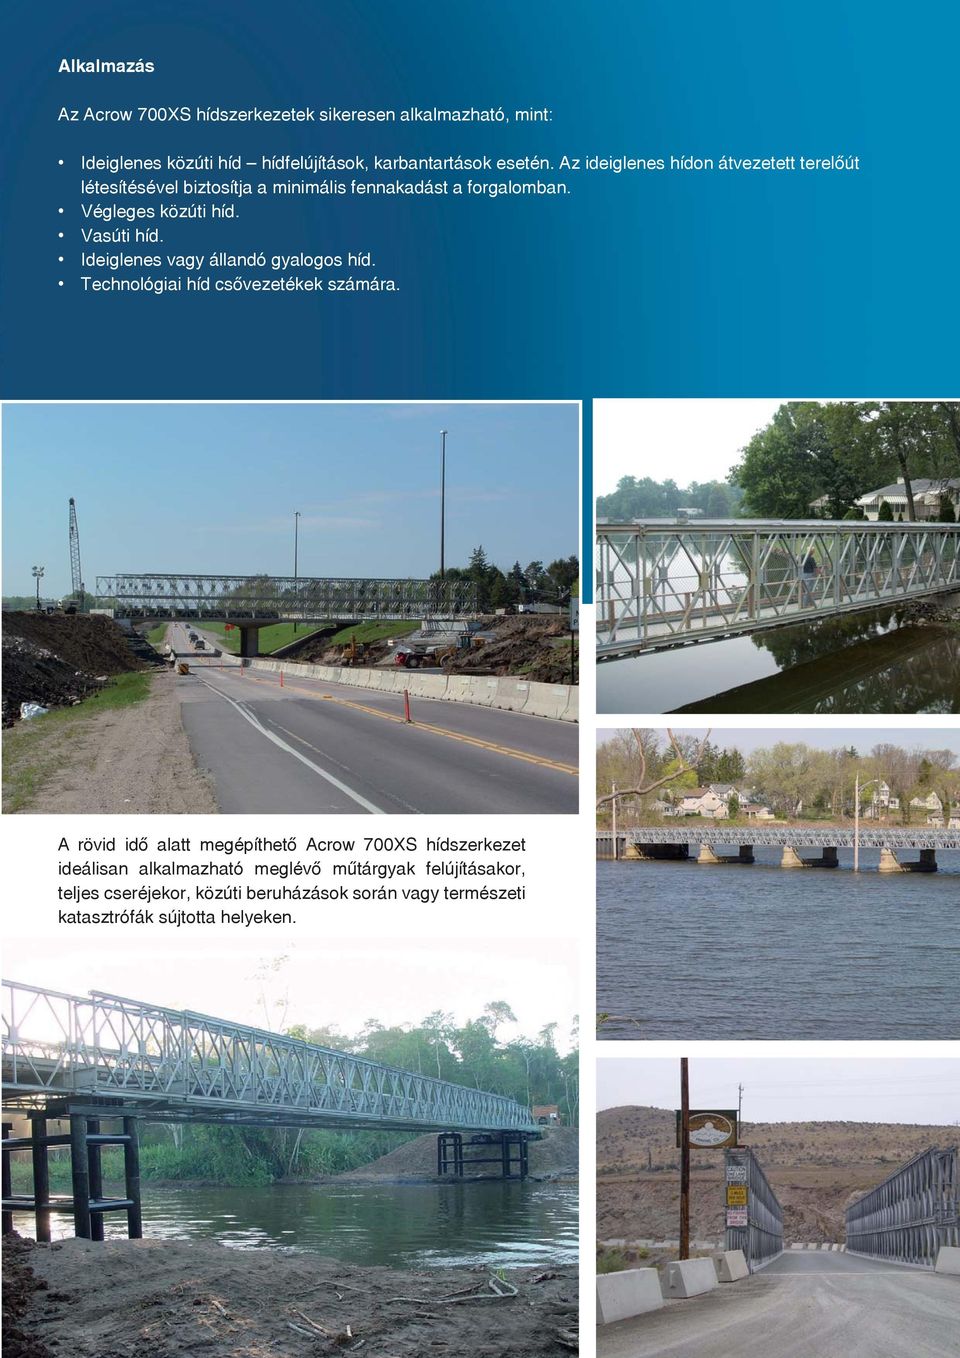 Ideiglenes vagy állandó gyalogos híd. Technológiai híd csővezetékek számára.